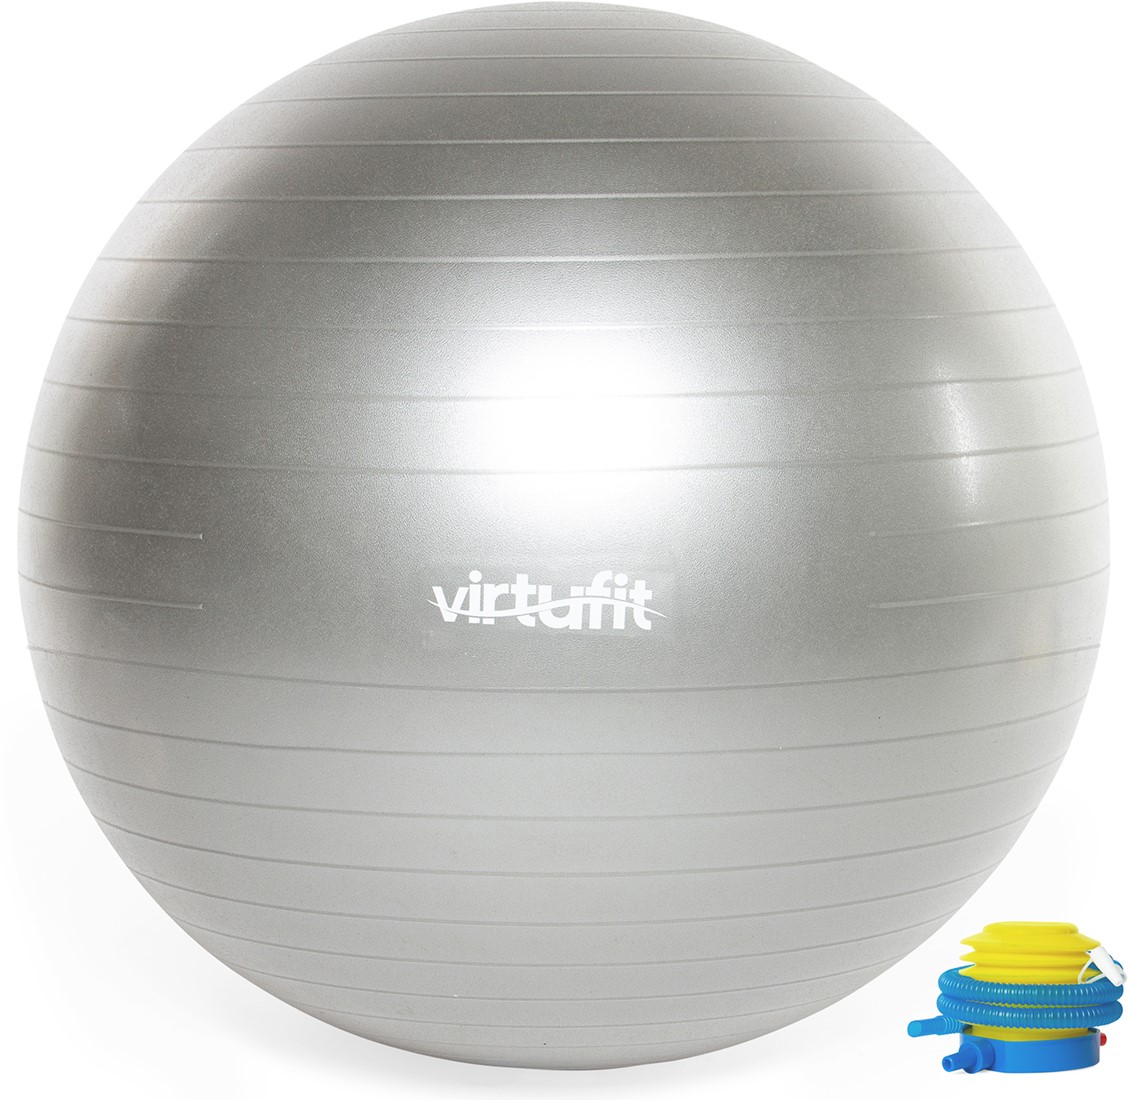 Dank u voor uw hulp ironie Oppervlakte VirtuFit Anti-Burst Fitnessbal Pro - Gymbal - Swiss Ball - met Pomp - Grijs  - 75 cm | Fitwinkel.nl